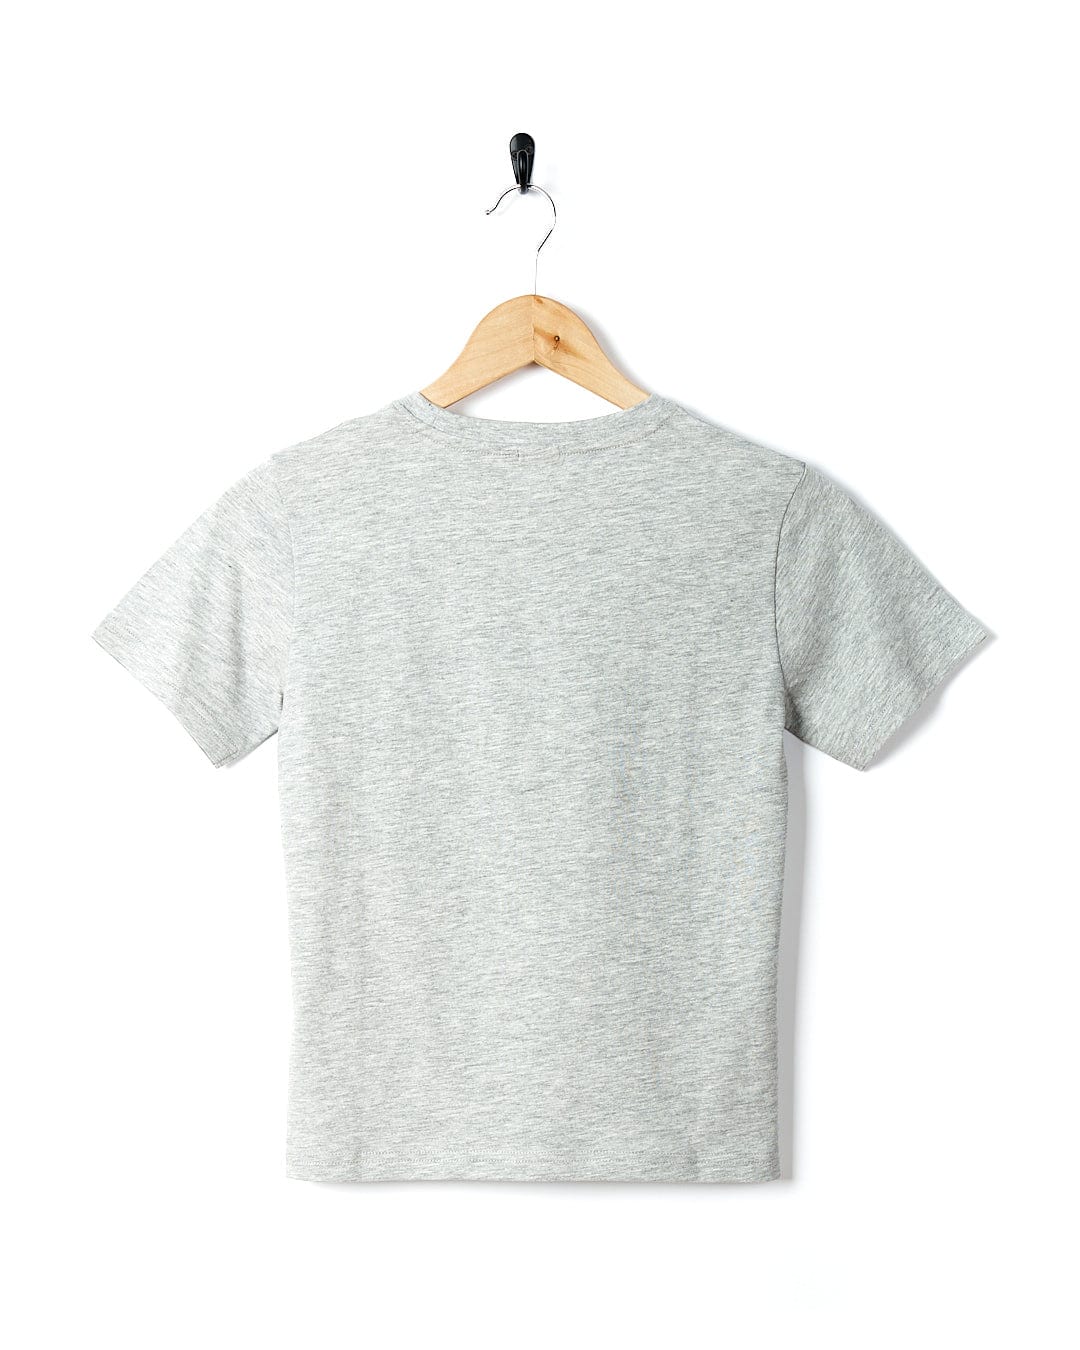 A Target Pop - Kids Short Sleeve T-Shirt - Grey hanging on a wooden hanger.